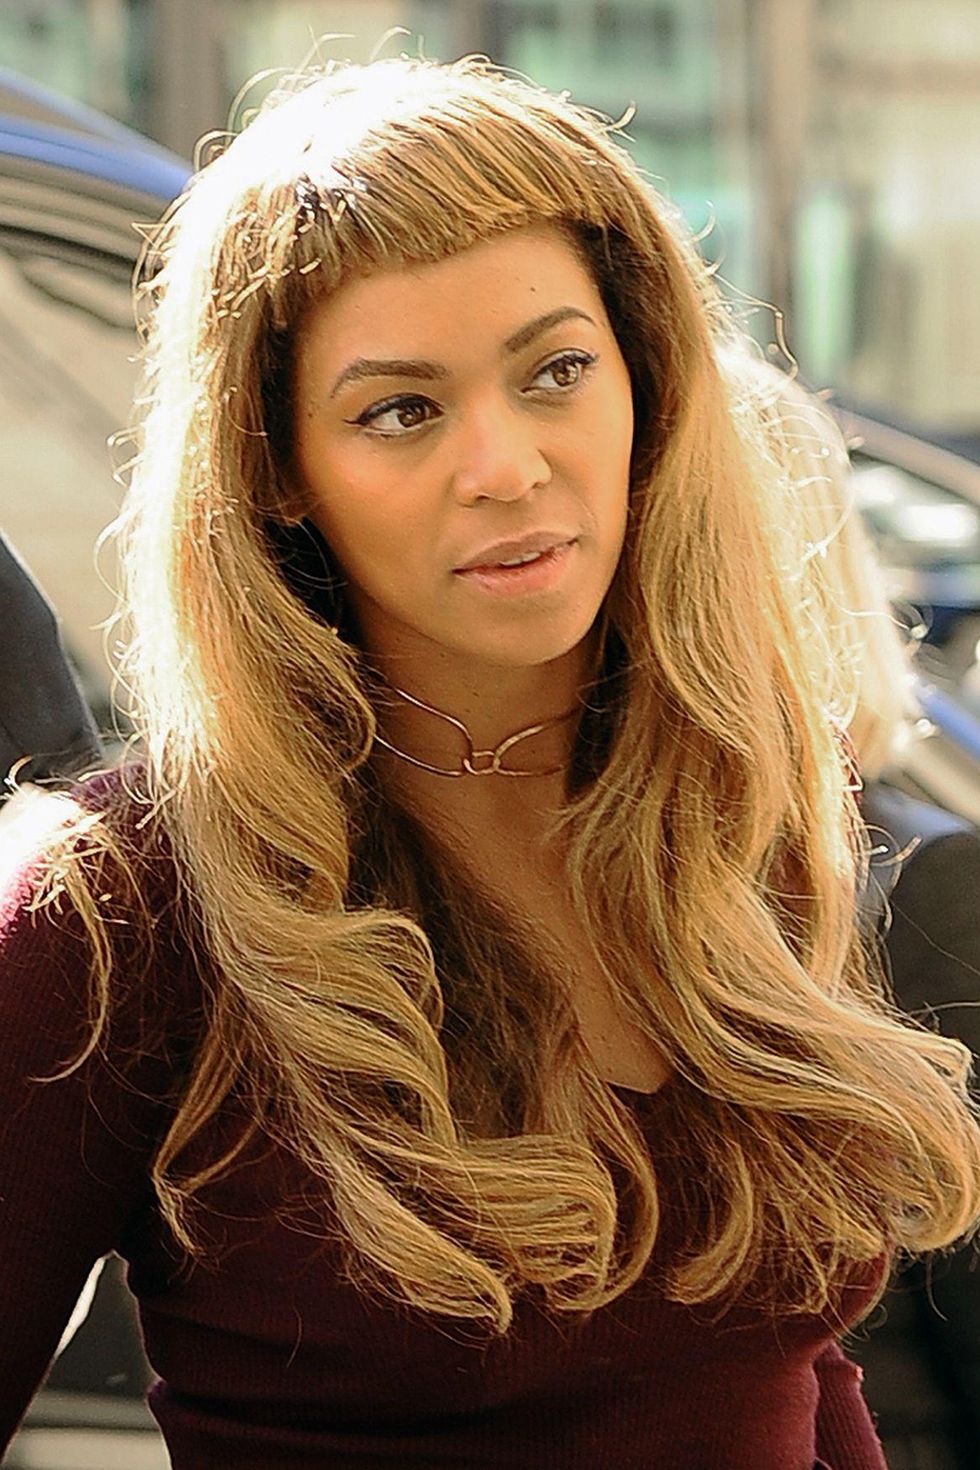 Beyoncé's got a new blunt fringe haircut